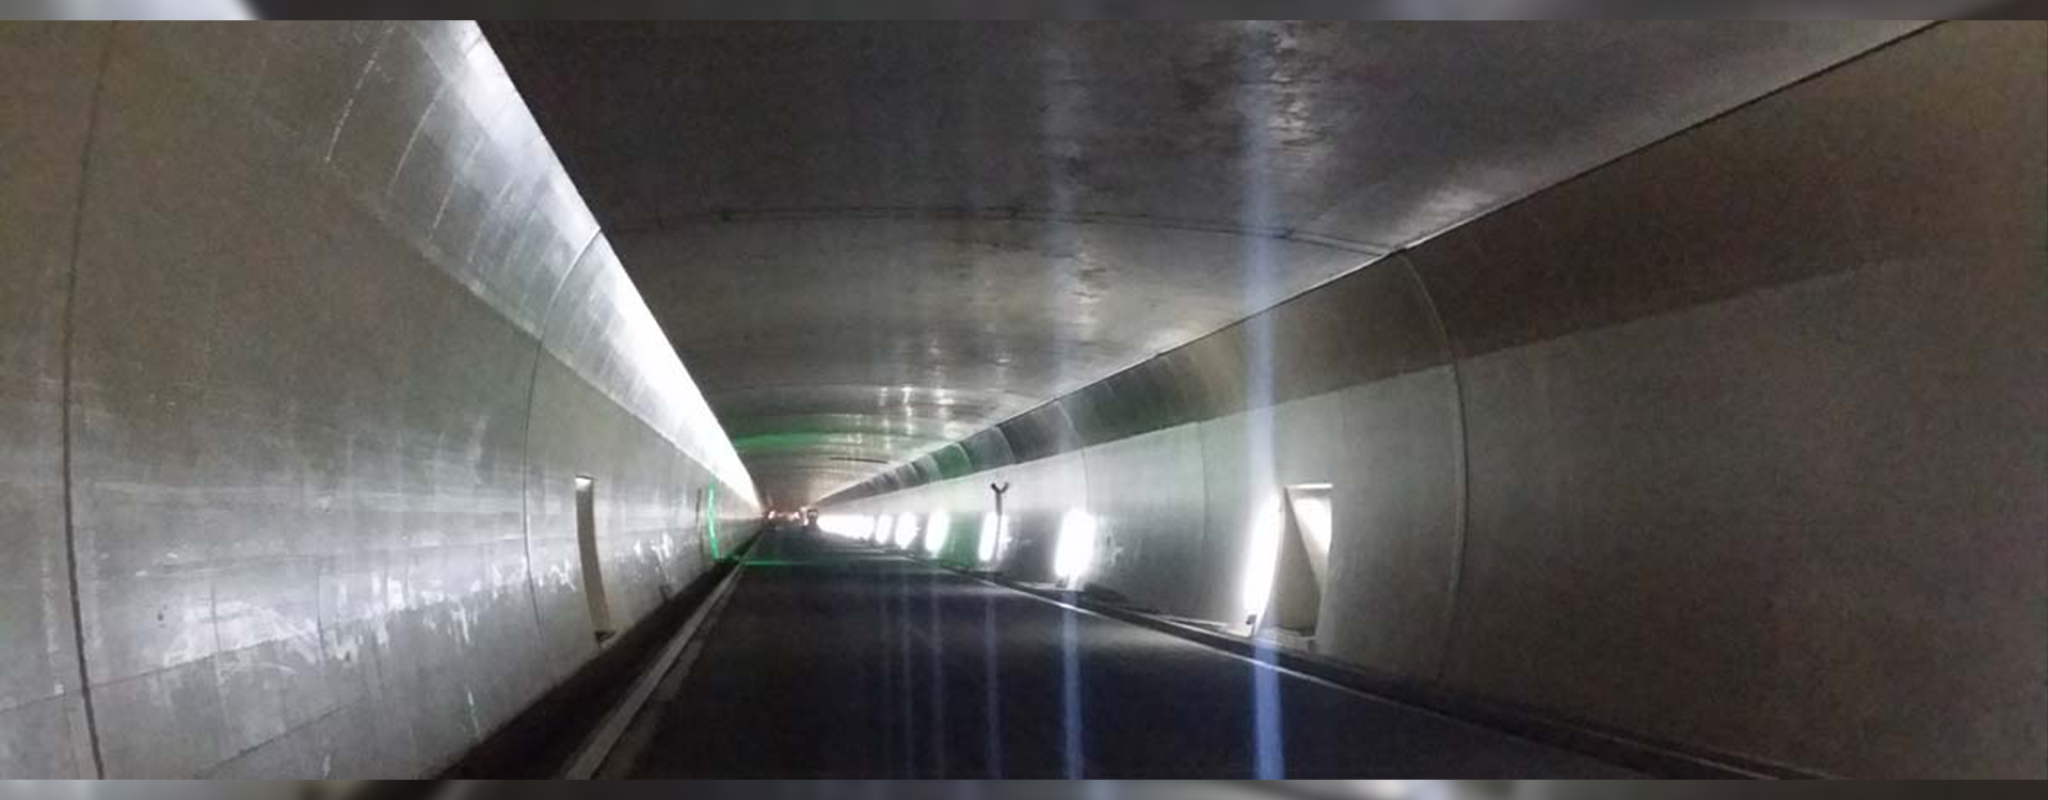 Gleinalmtunnel / Tunneldeckenauflager